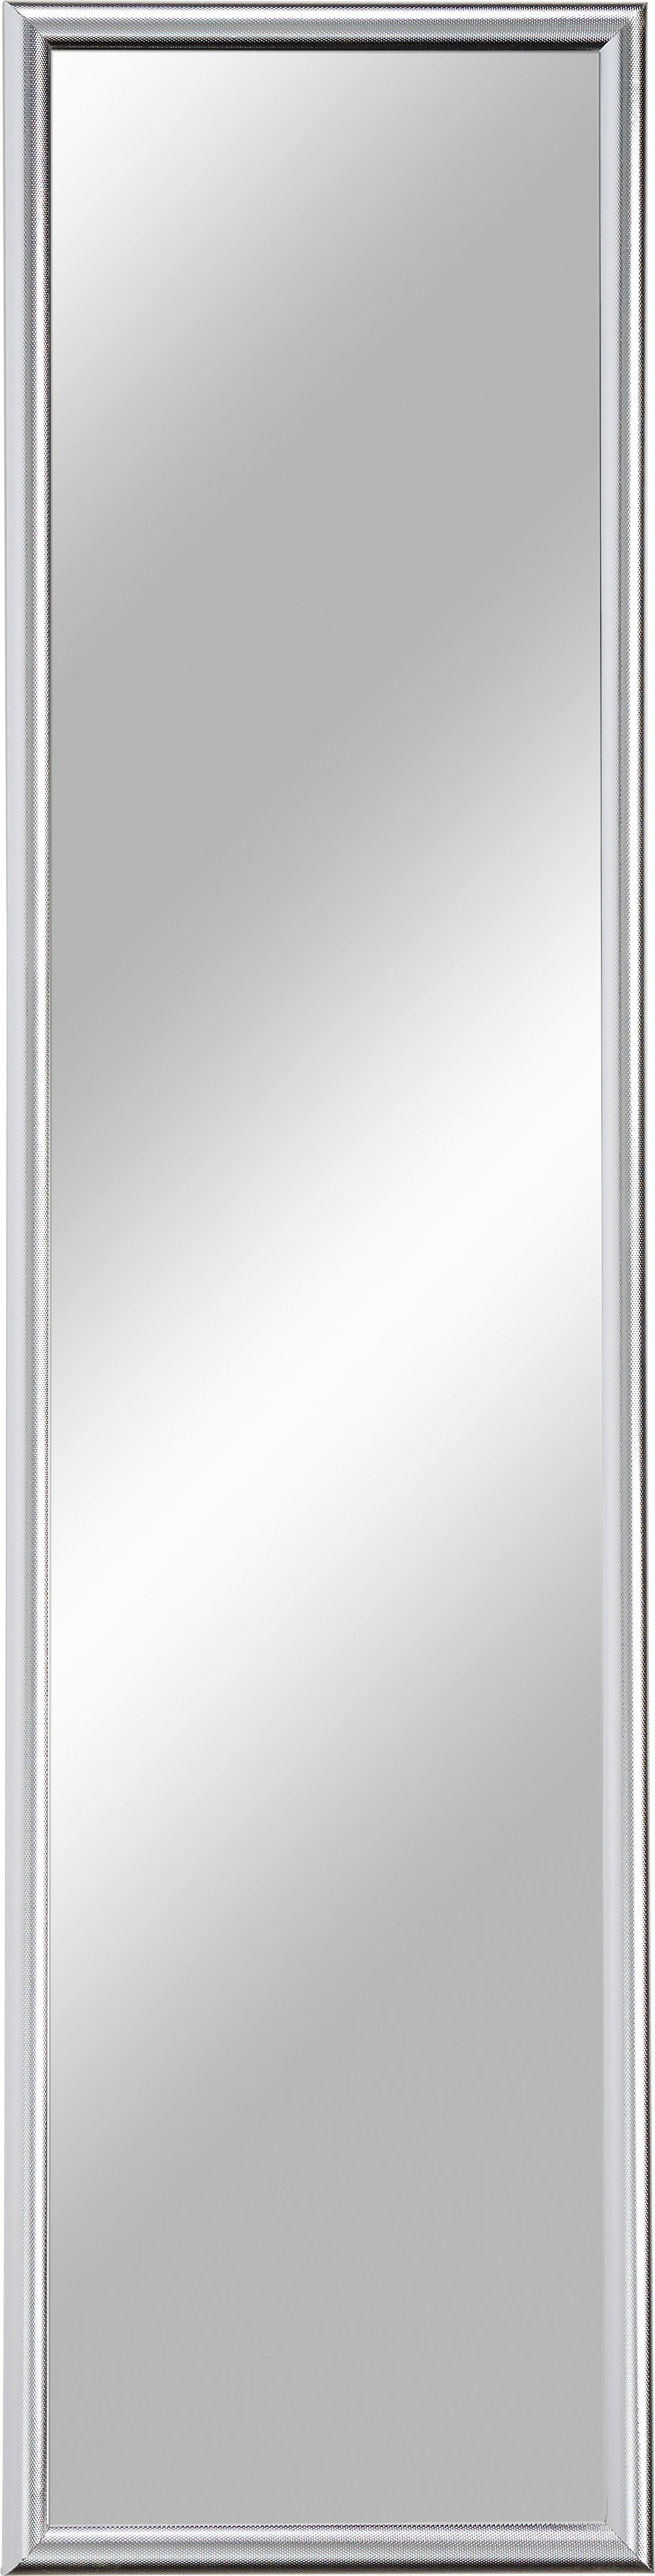 Nástenné Zrkadlo Fumo 103-657 - strieborná, Moderný, kompozitné drevo/sklo (40/160cm) - Ondega